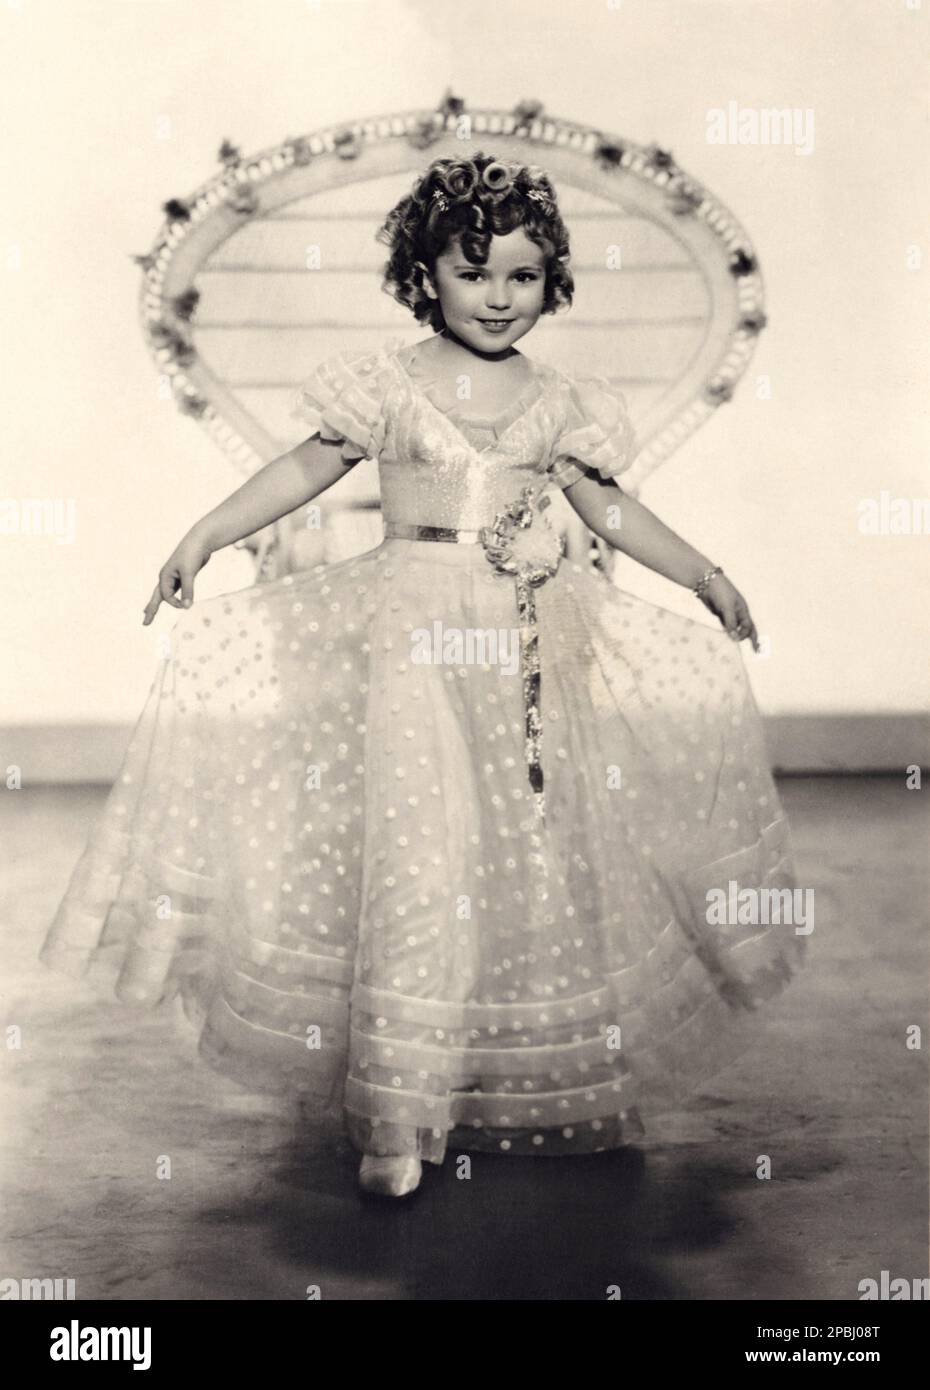 1936 ca : l'attrice bambino SHIRLEY TEMPLE ( Santa Monica , CA 1928 ), Pubblicity still - FILM - CINEMA - ritratto - ritratto - boccoli - riccioli - riccioli - bambino prodigio - celebrità attori attrice attore - sorriso - sorriso - velo - velo - tulle - poi - plka-dots --- Archivio GBB Foto Stock